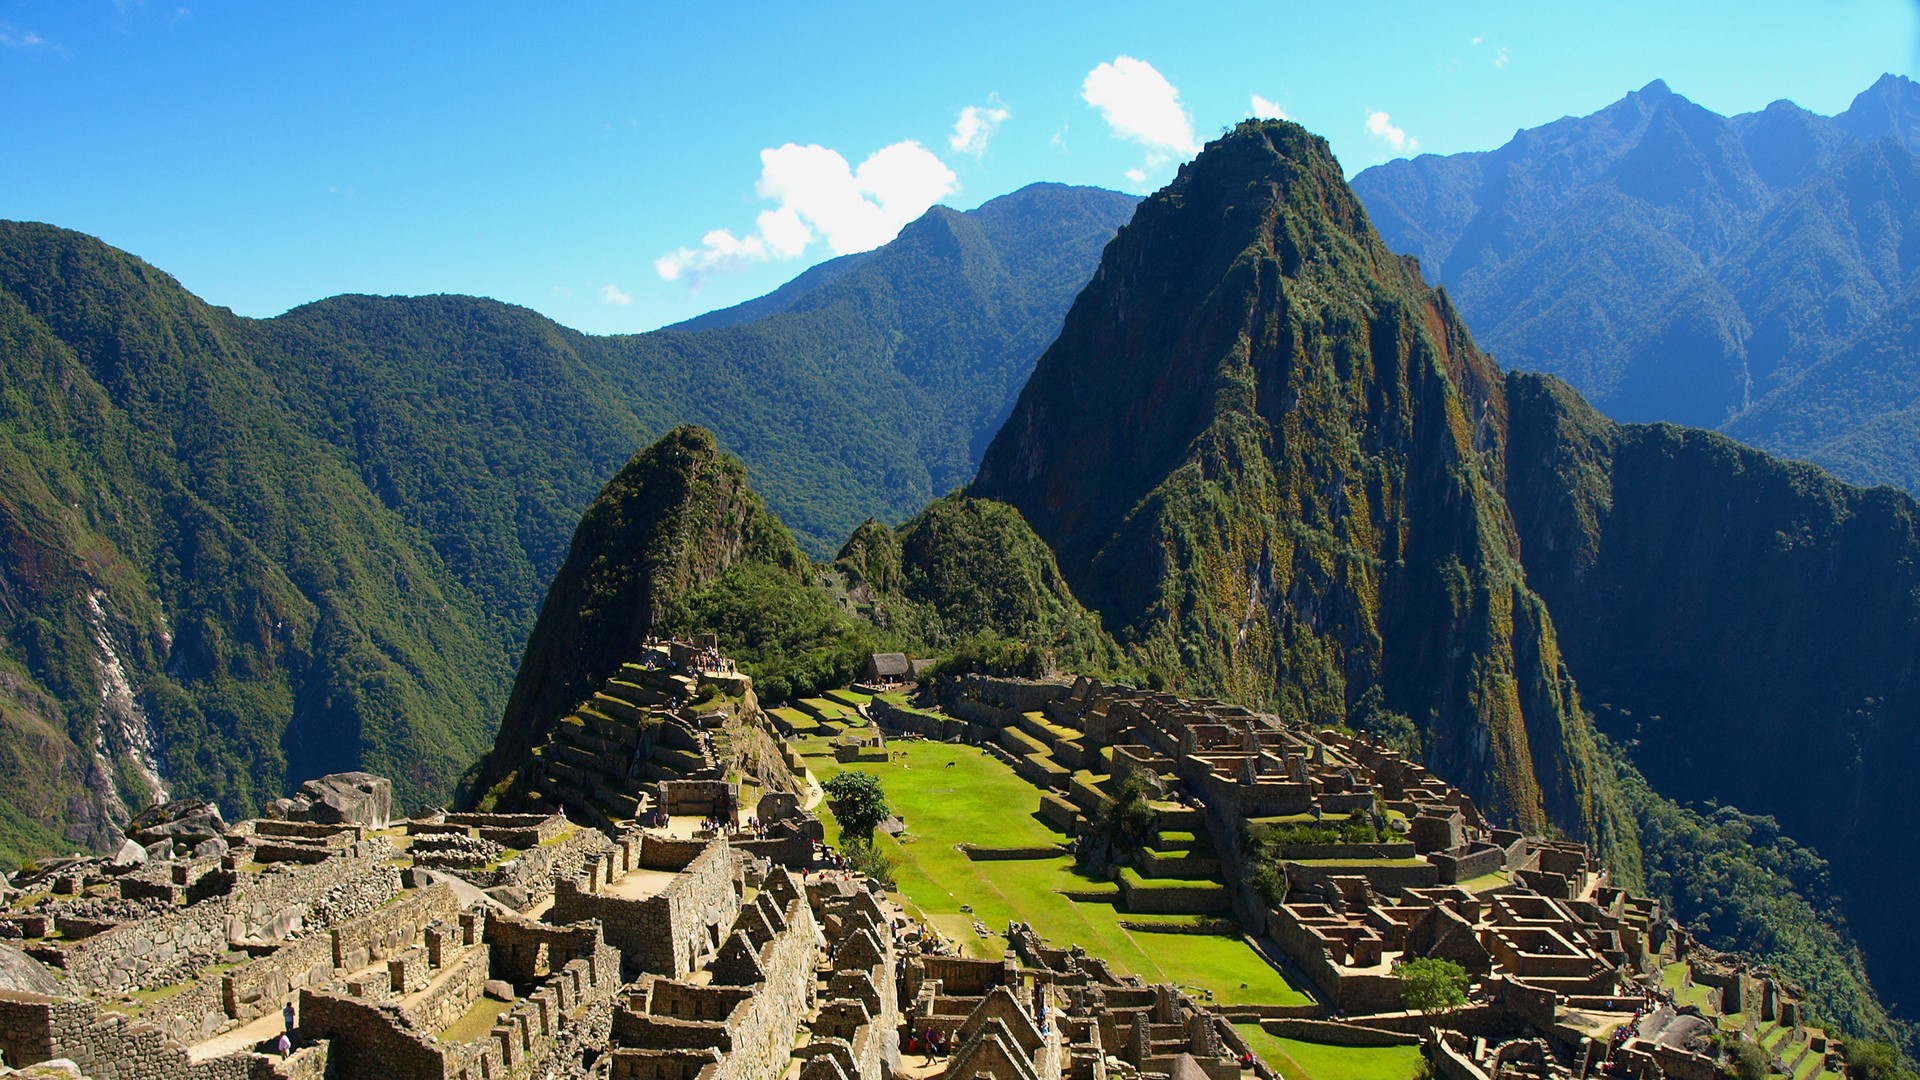 Machu Picchu, ruins of lost ancient city of Incan Empire in Peru ...